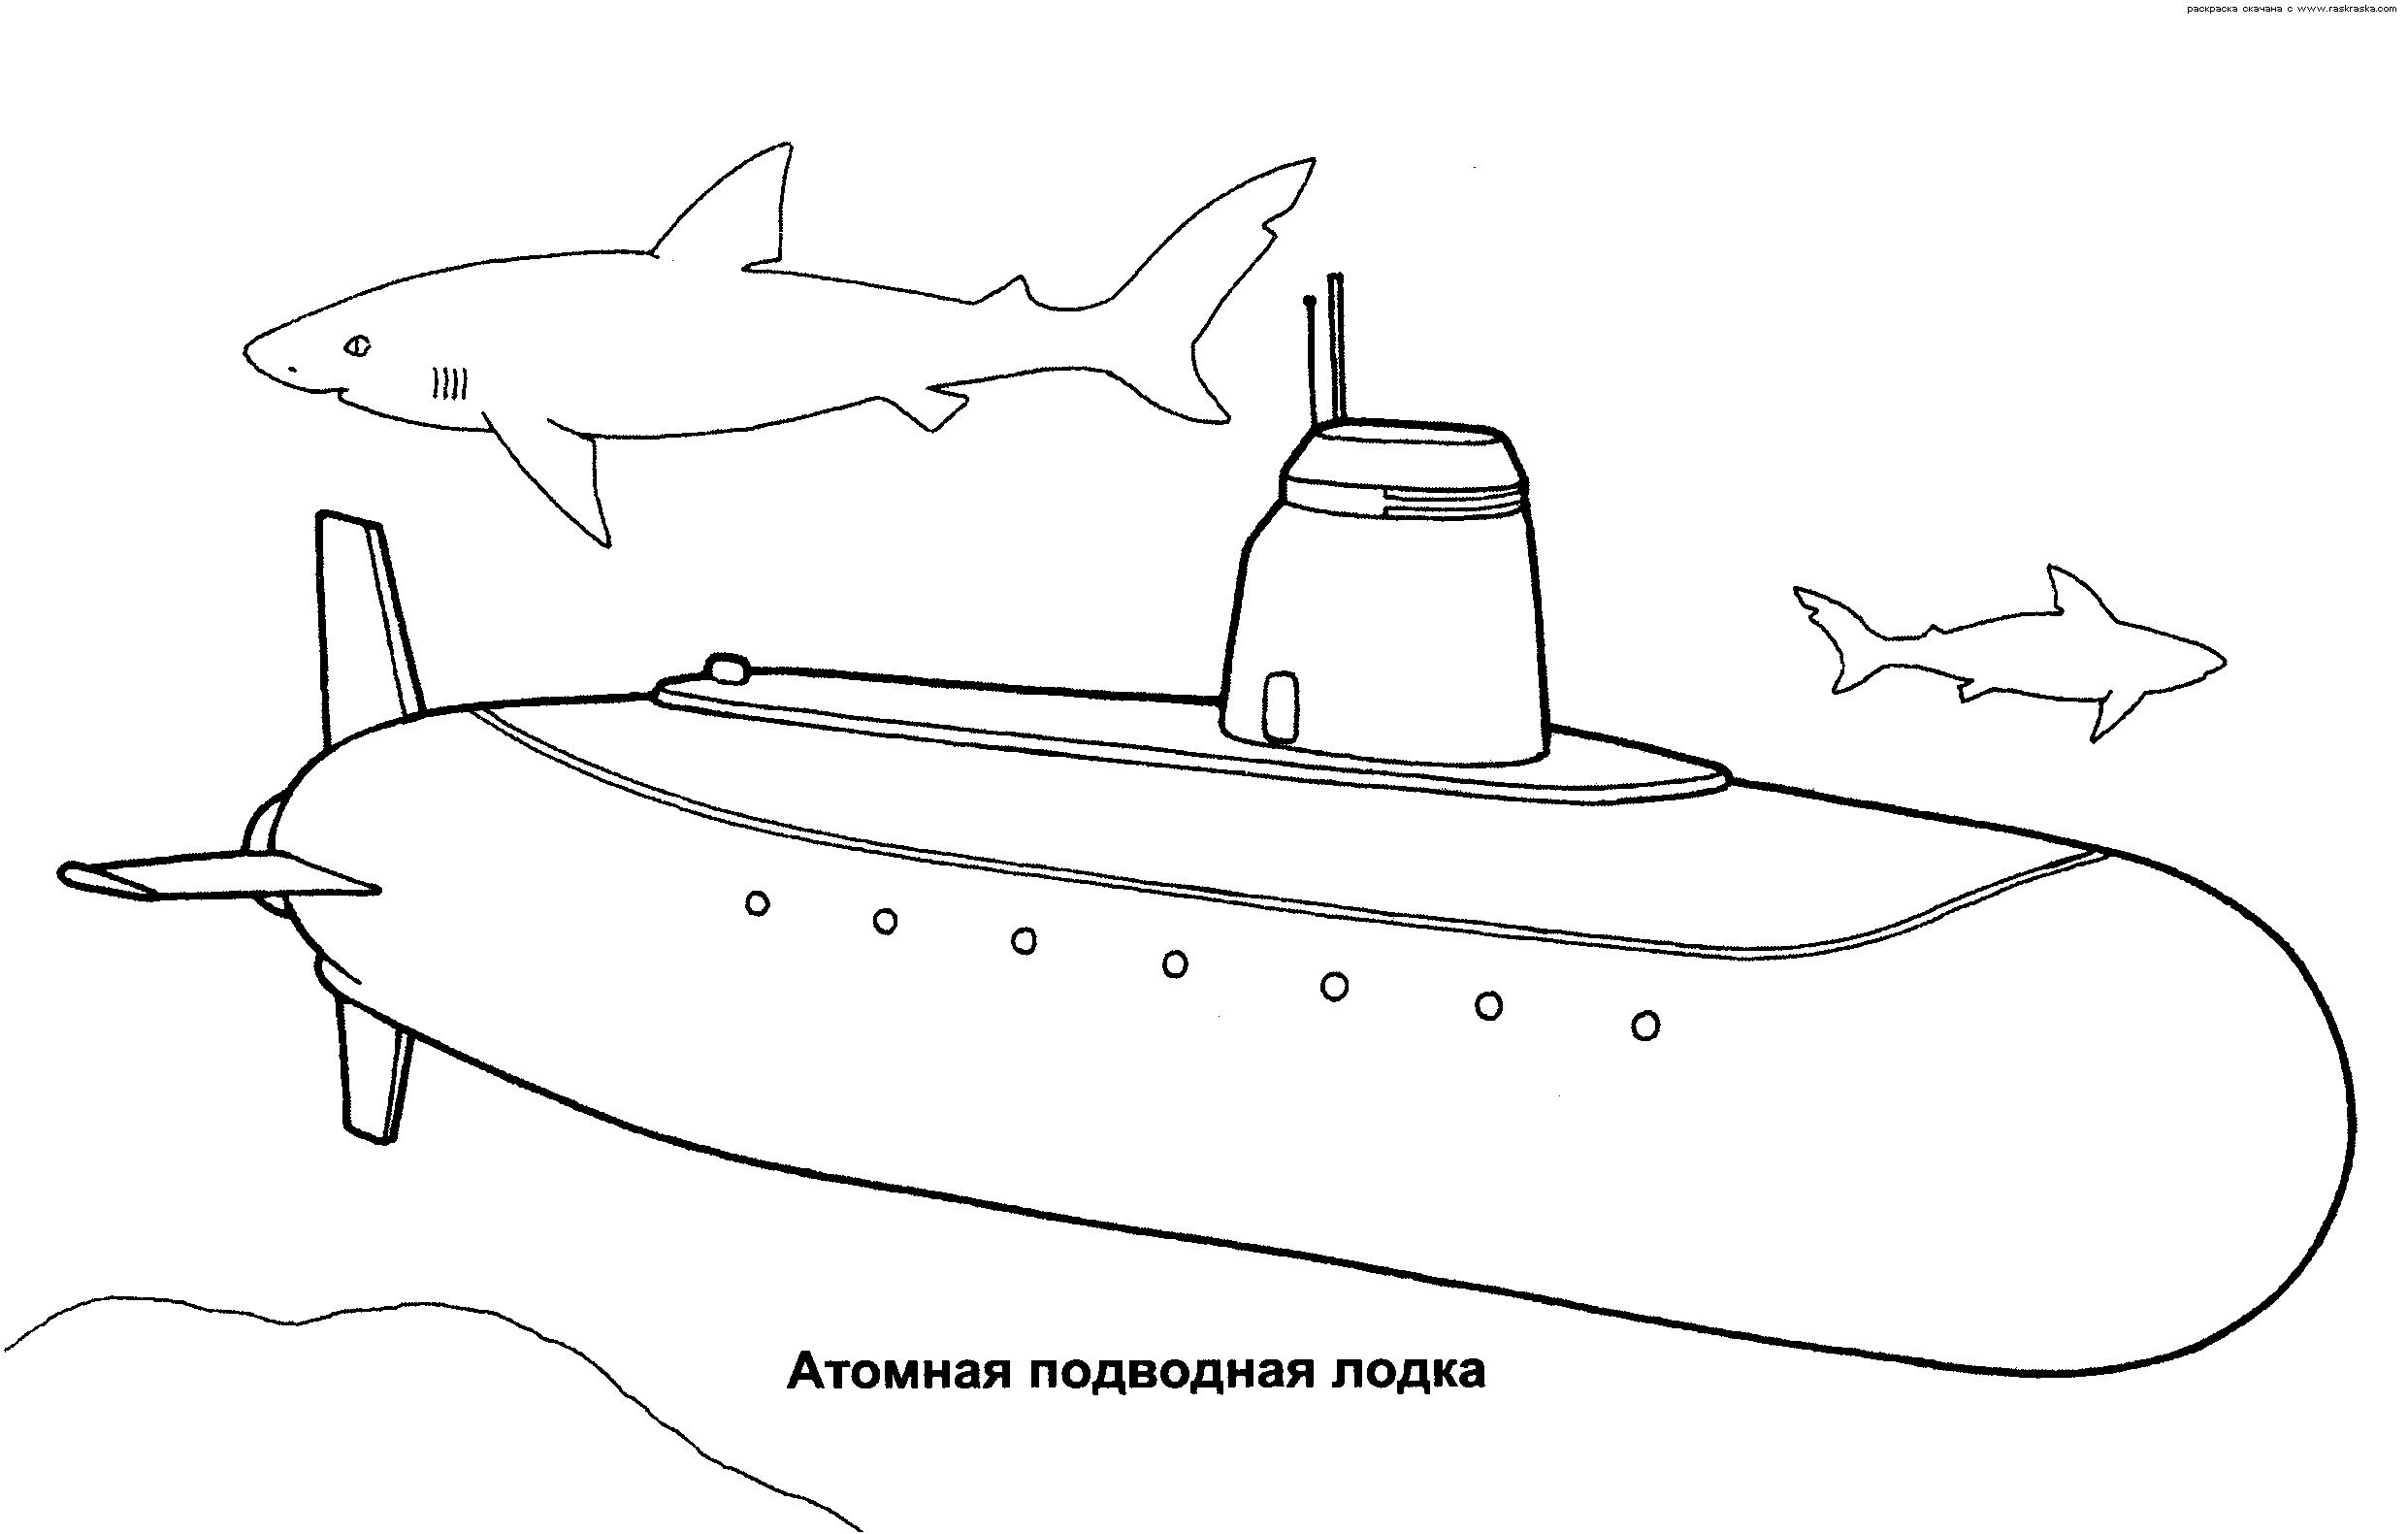 Розмальовки дитяча Дитяча розфарбування, подводниймір, атомний підводний човен